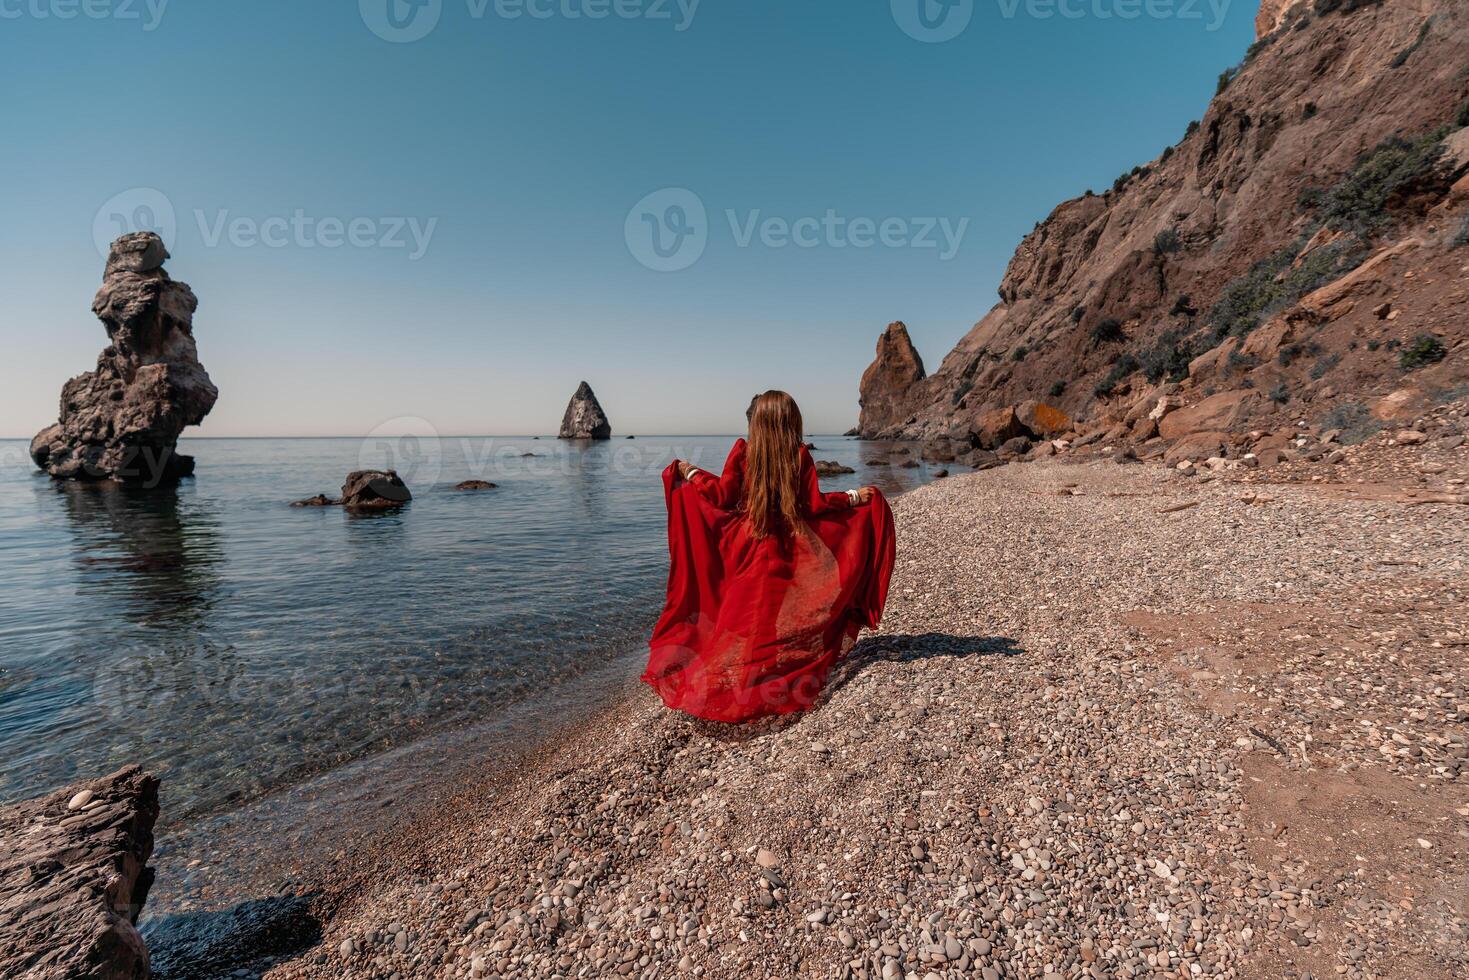 een vrouw in een rood jurk staat Aan een strand met een rotsachtig kustlijn in de achtergrond. de tafereel is sereen en vredevol, met de vrouw rood jurk contrasterend tegen de natuurlijk elementen van de strand. foto